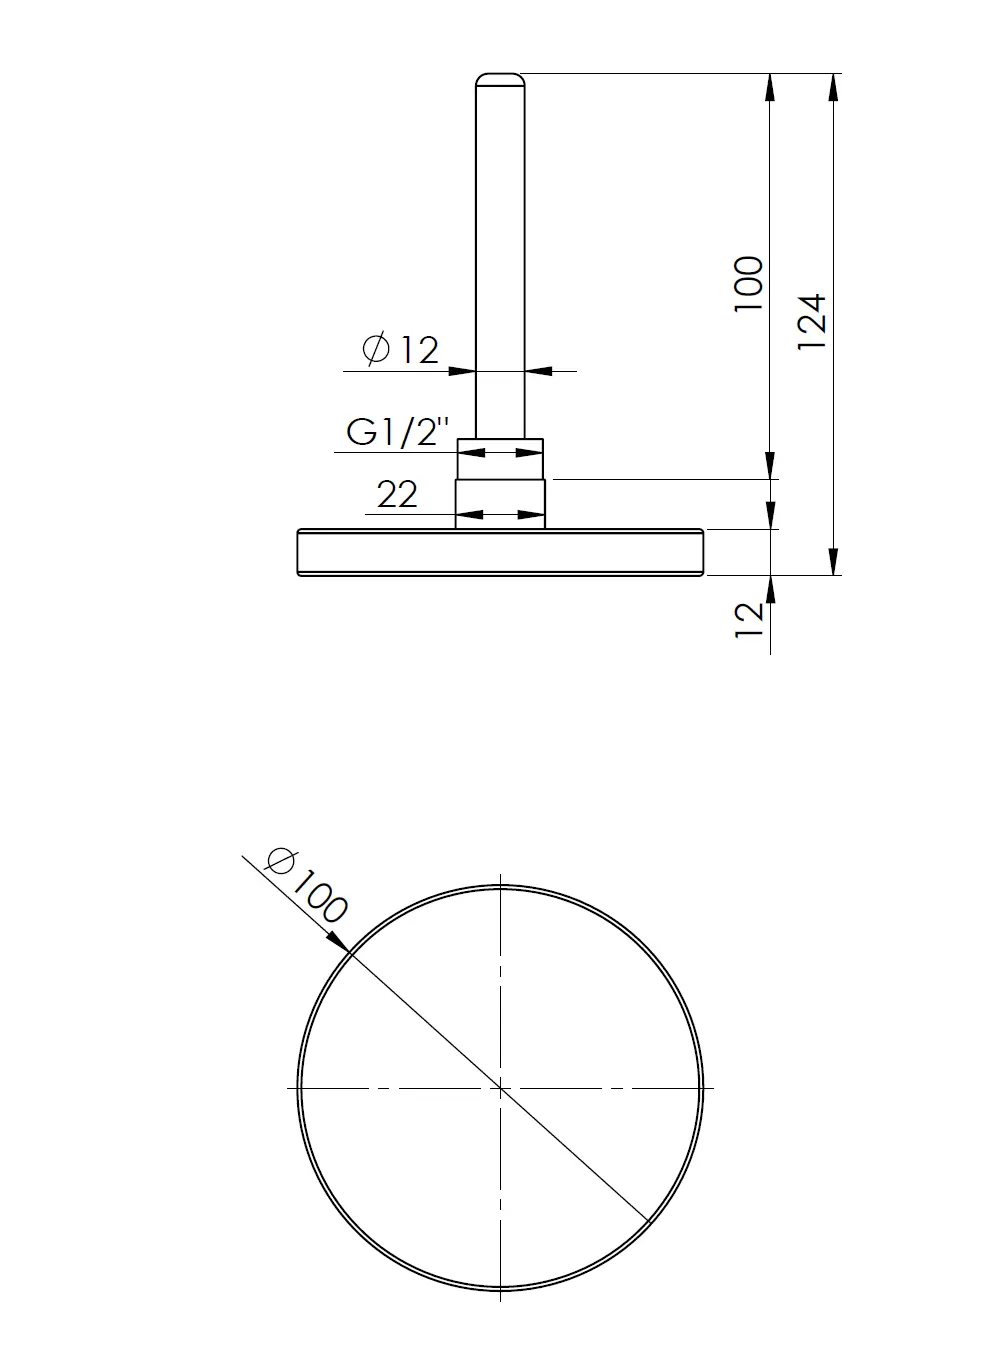 Termometr bimetaliczny BiTh 100, fi100 mm, 0÷120°C, L 100 mm, G1/2", ax, kl. 2 - budowa